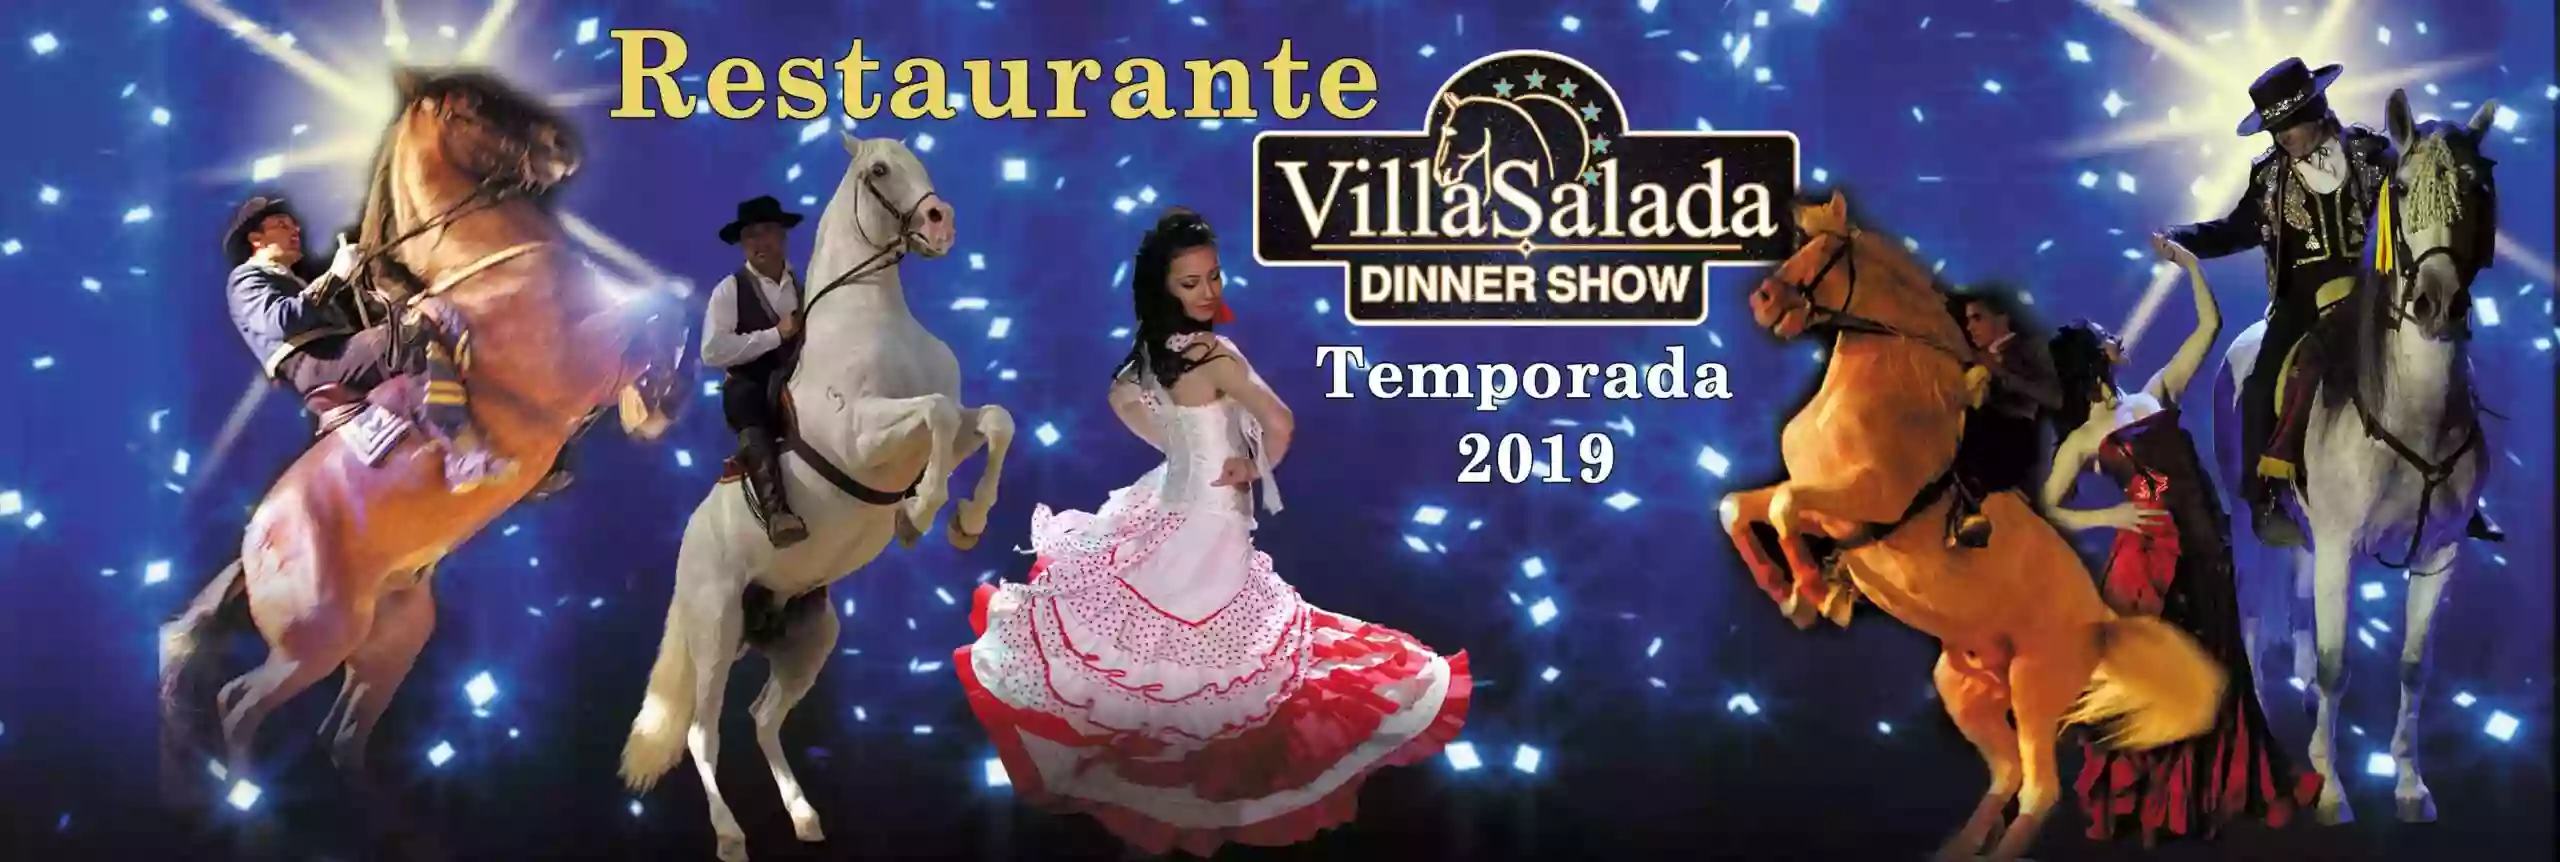 Restaurante Villasalada